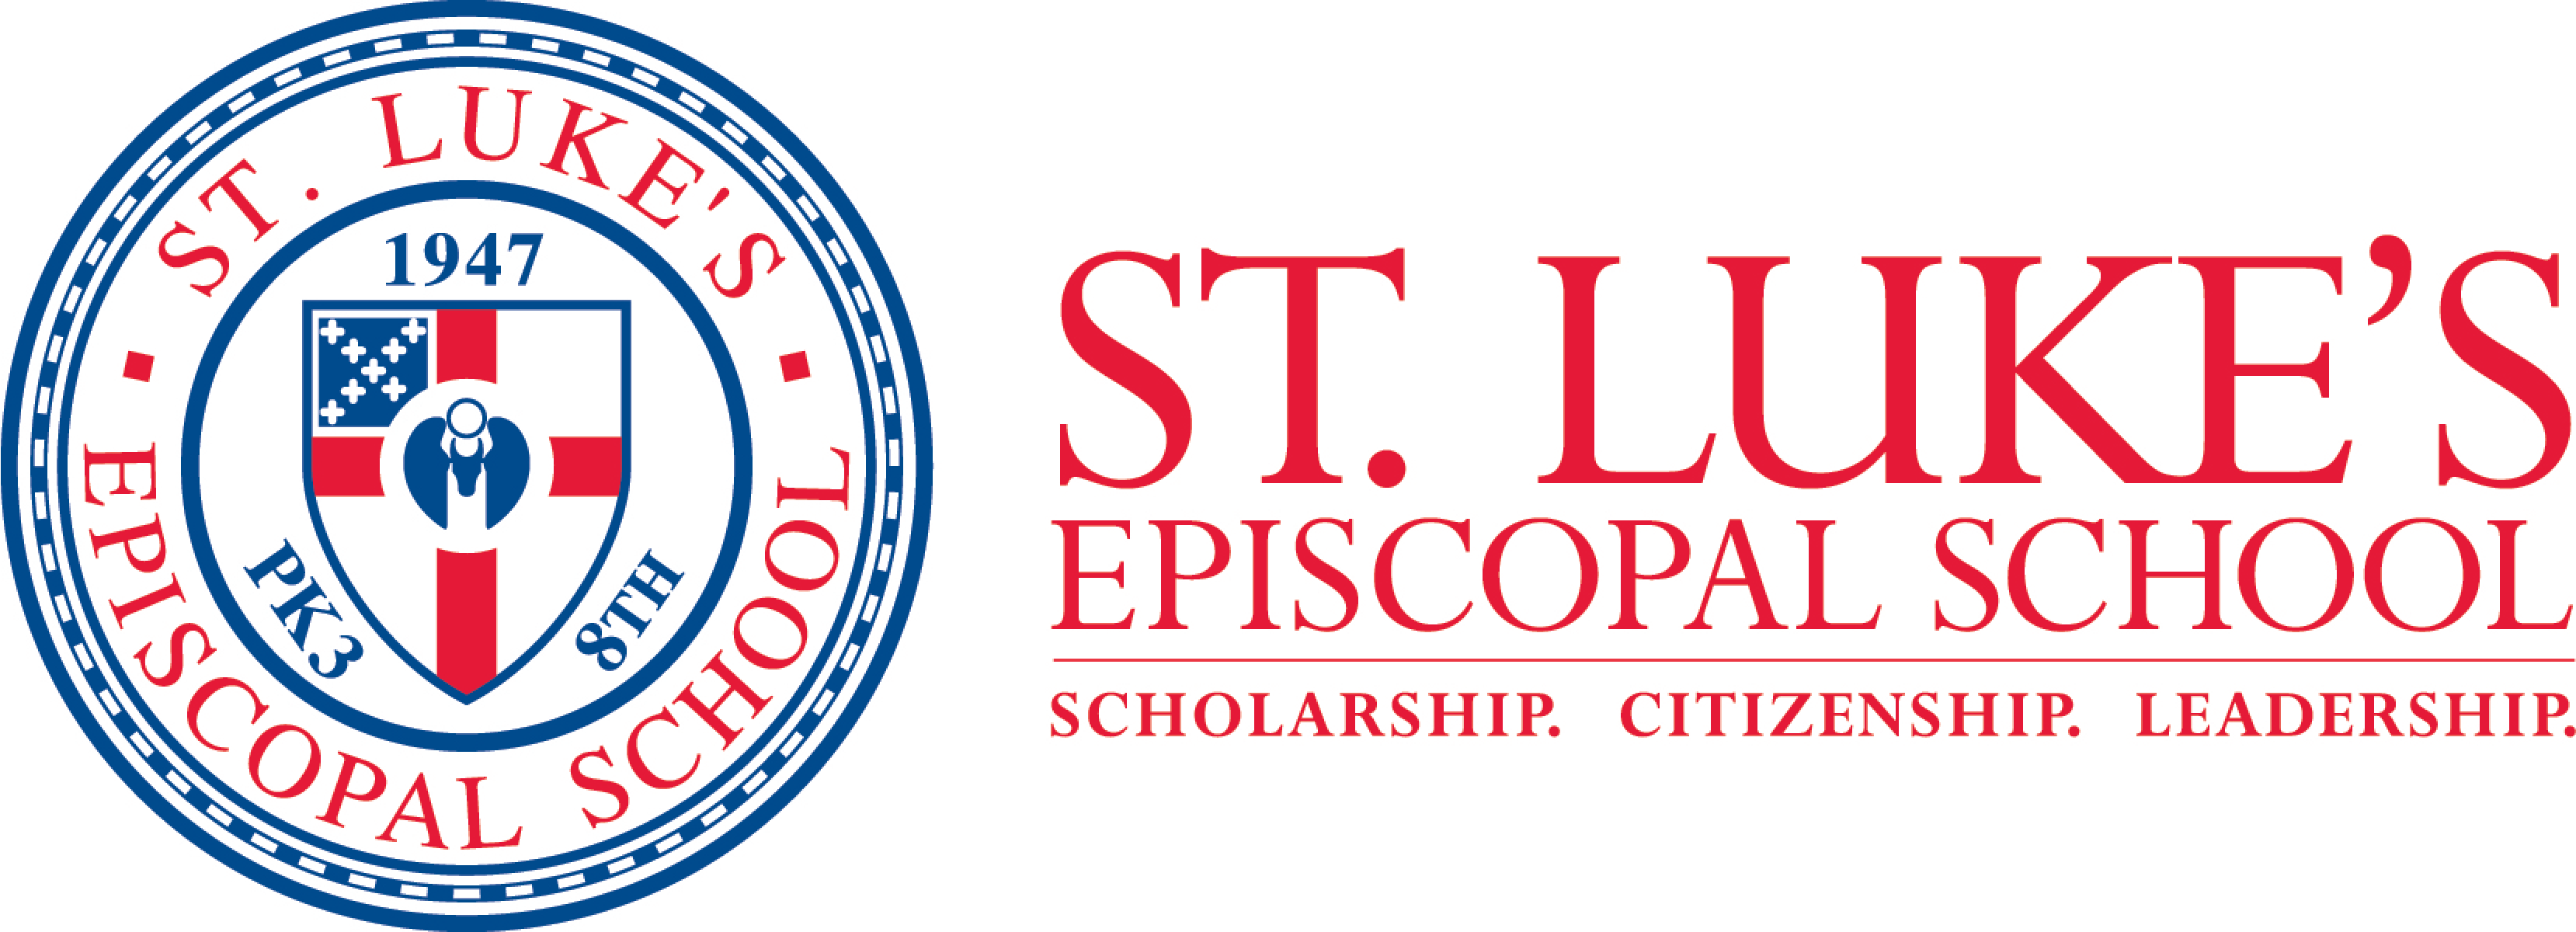 St. Luke’s Episcopal School